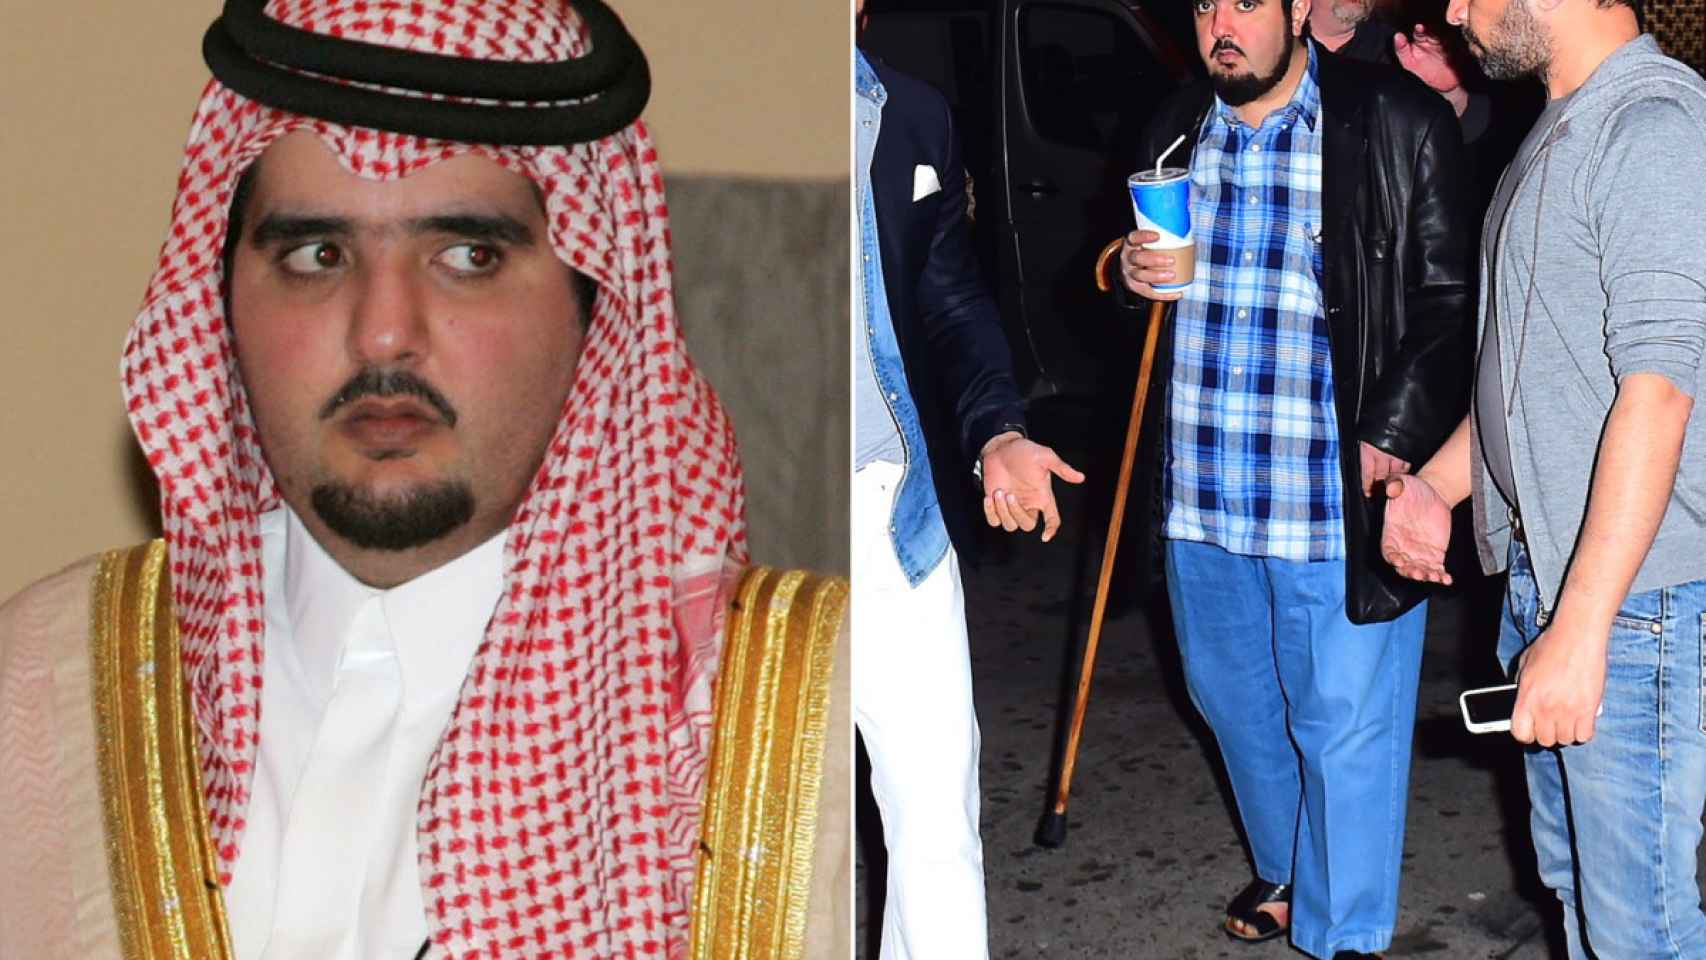 El príncipe Abdul Aziz, hijo del Rey Salman